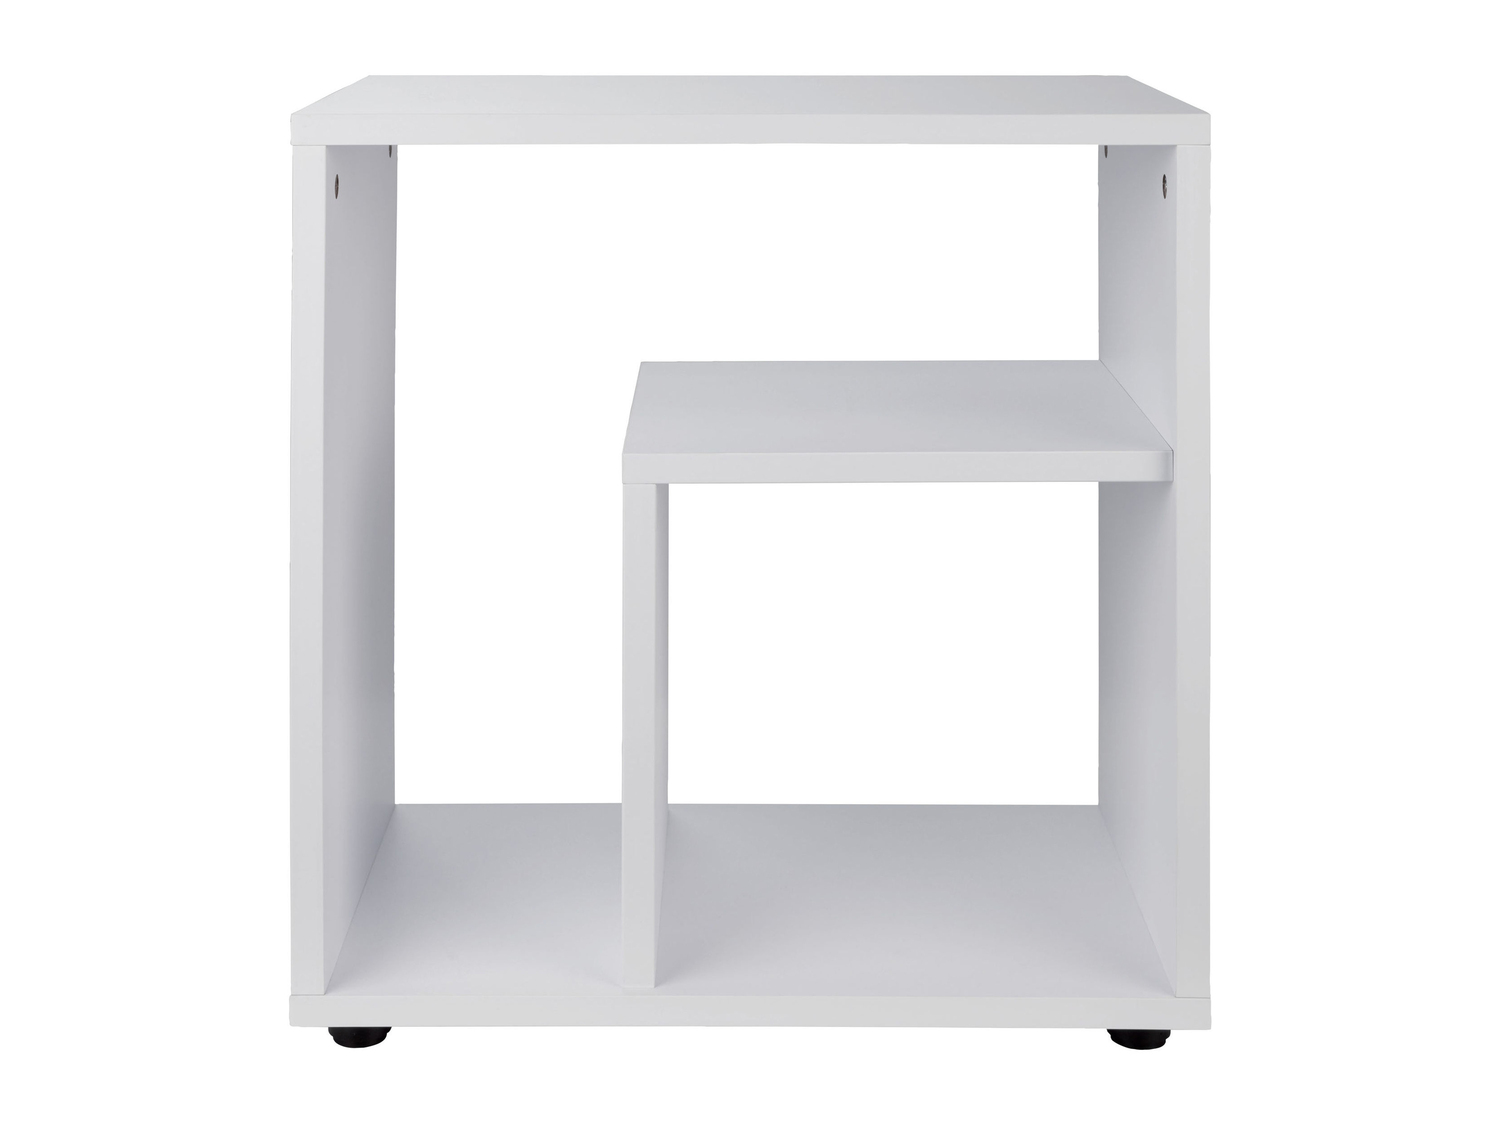 Tavolino Livarno, prezzo 19.99 € 
- Max. 10 Kg sul ripiano superiore
- Dimensioni: ...